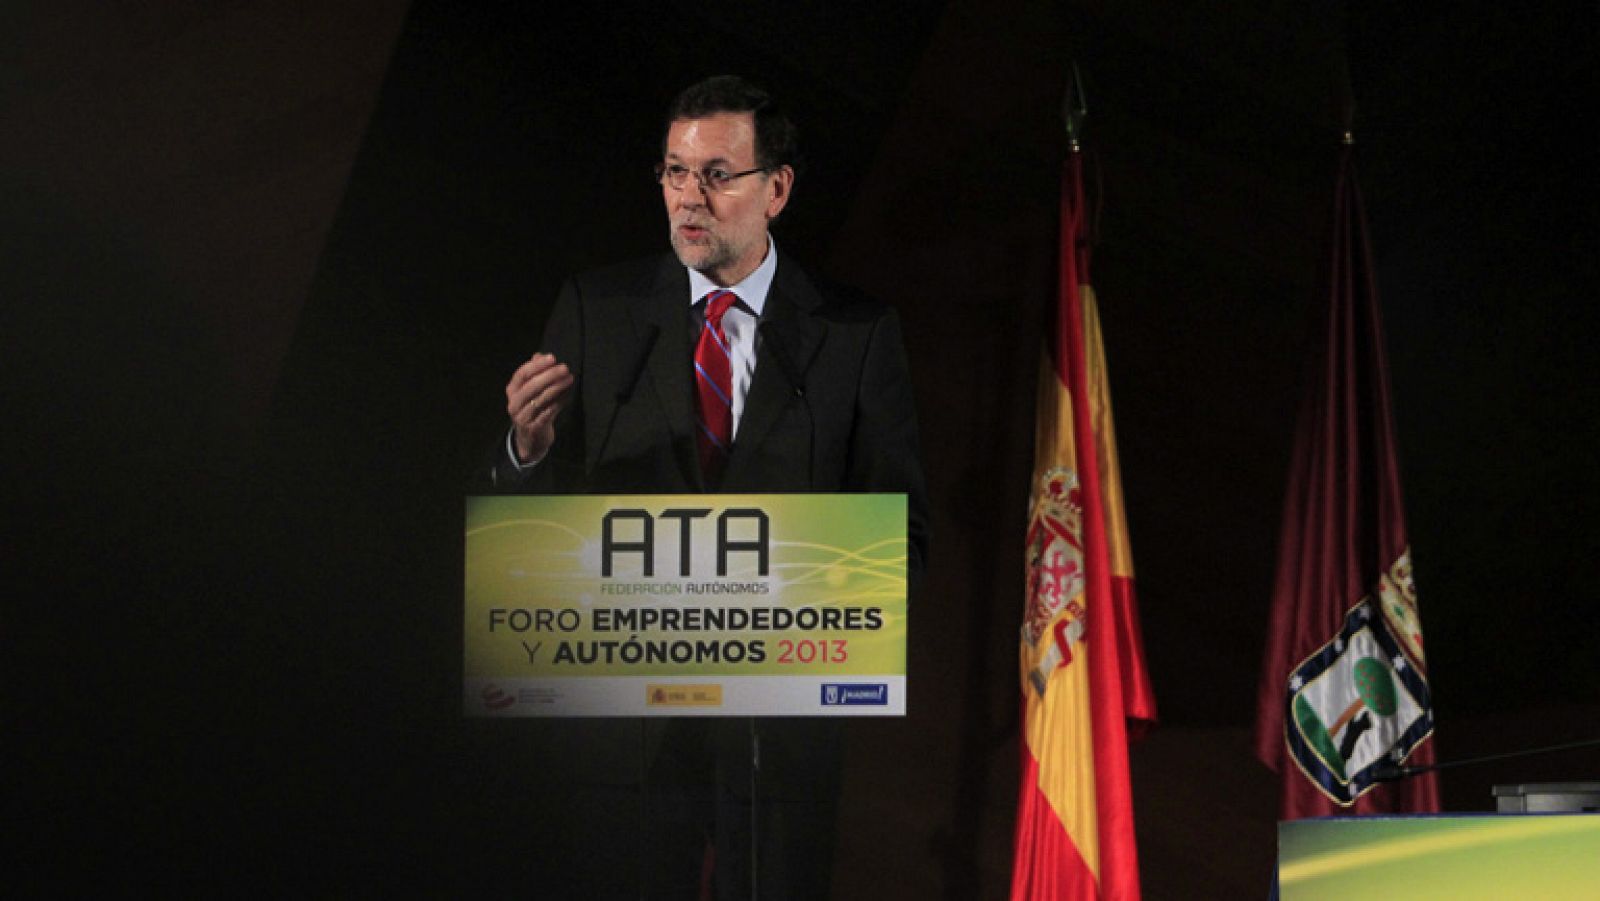 Rajoy amplía el contrato de emprendedores al tiempo parcial